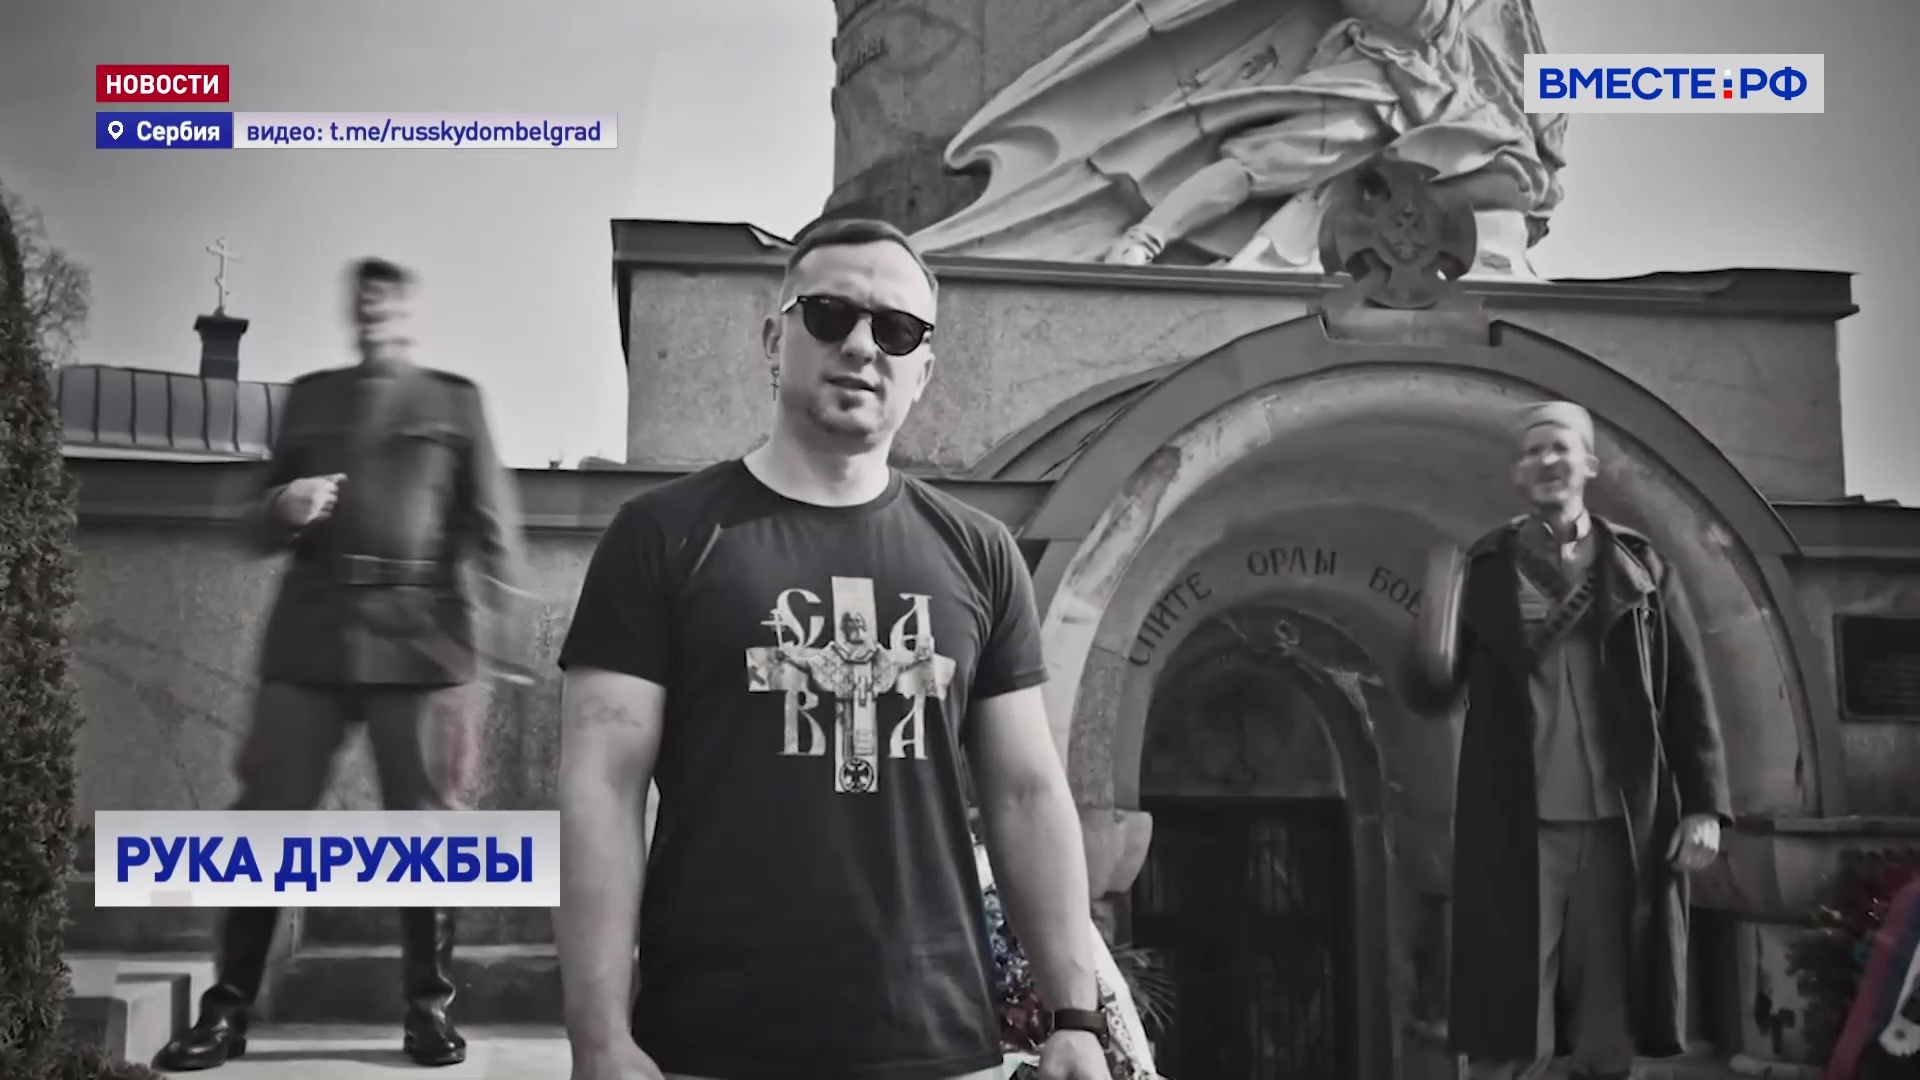 Рок-группа из Белграда выпустила песню и клип в поддержку Путина